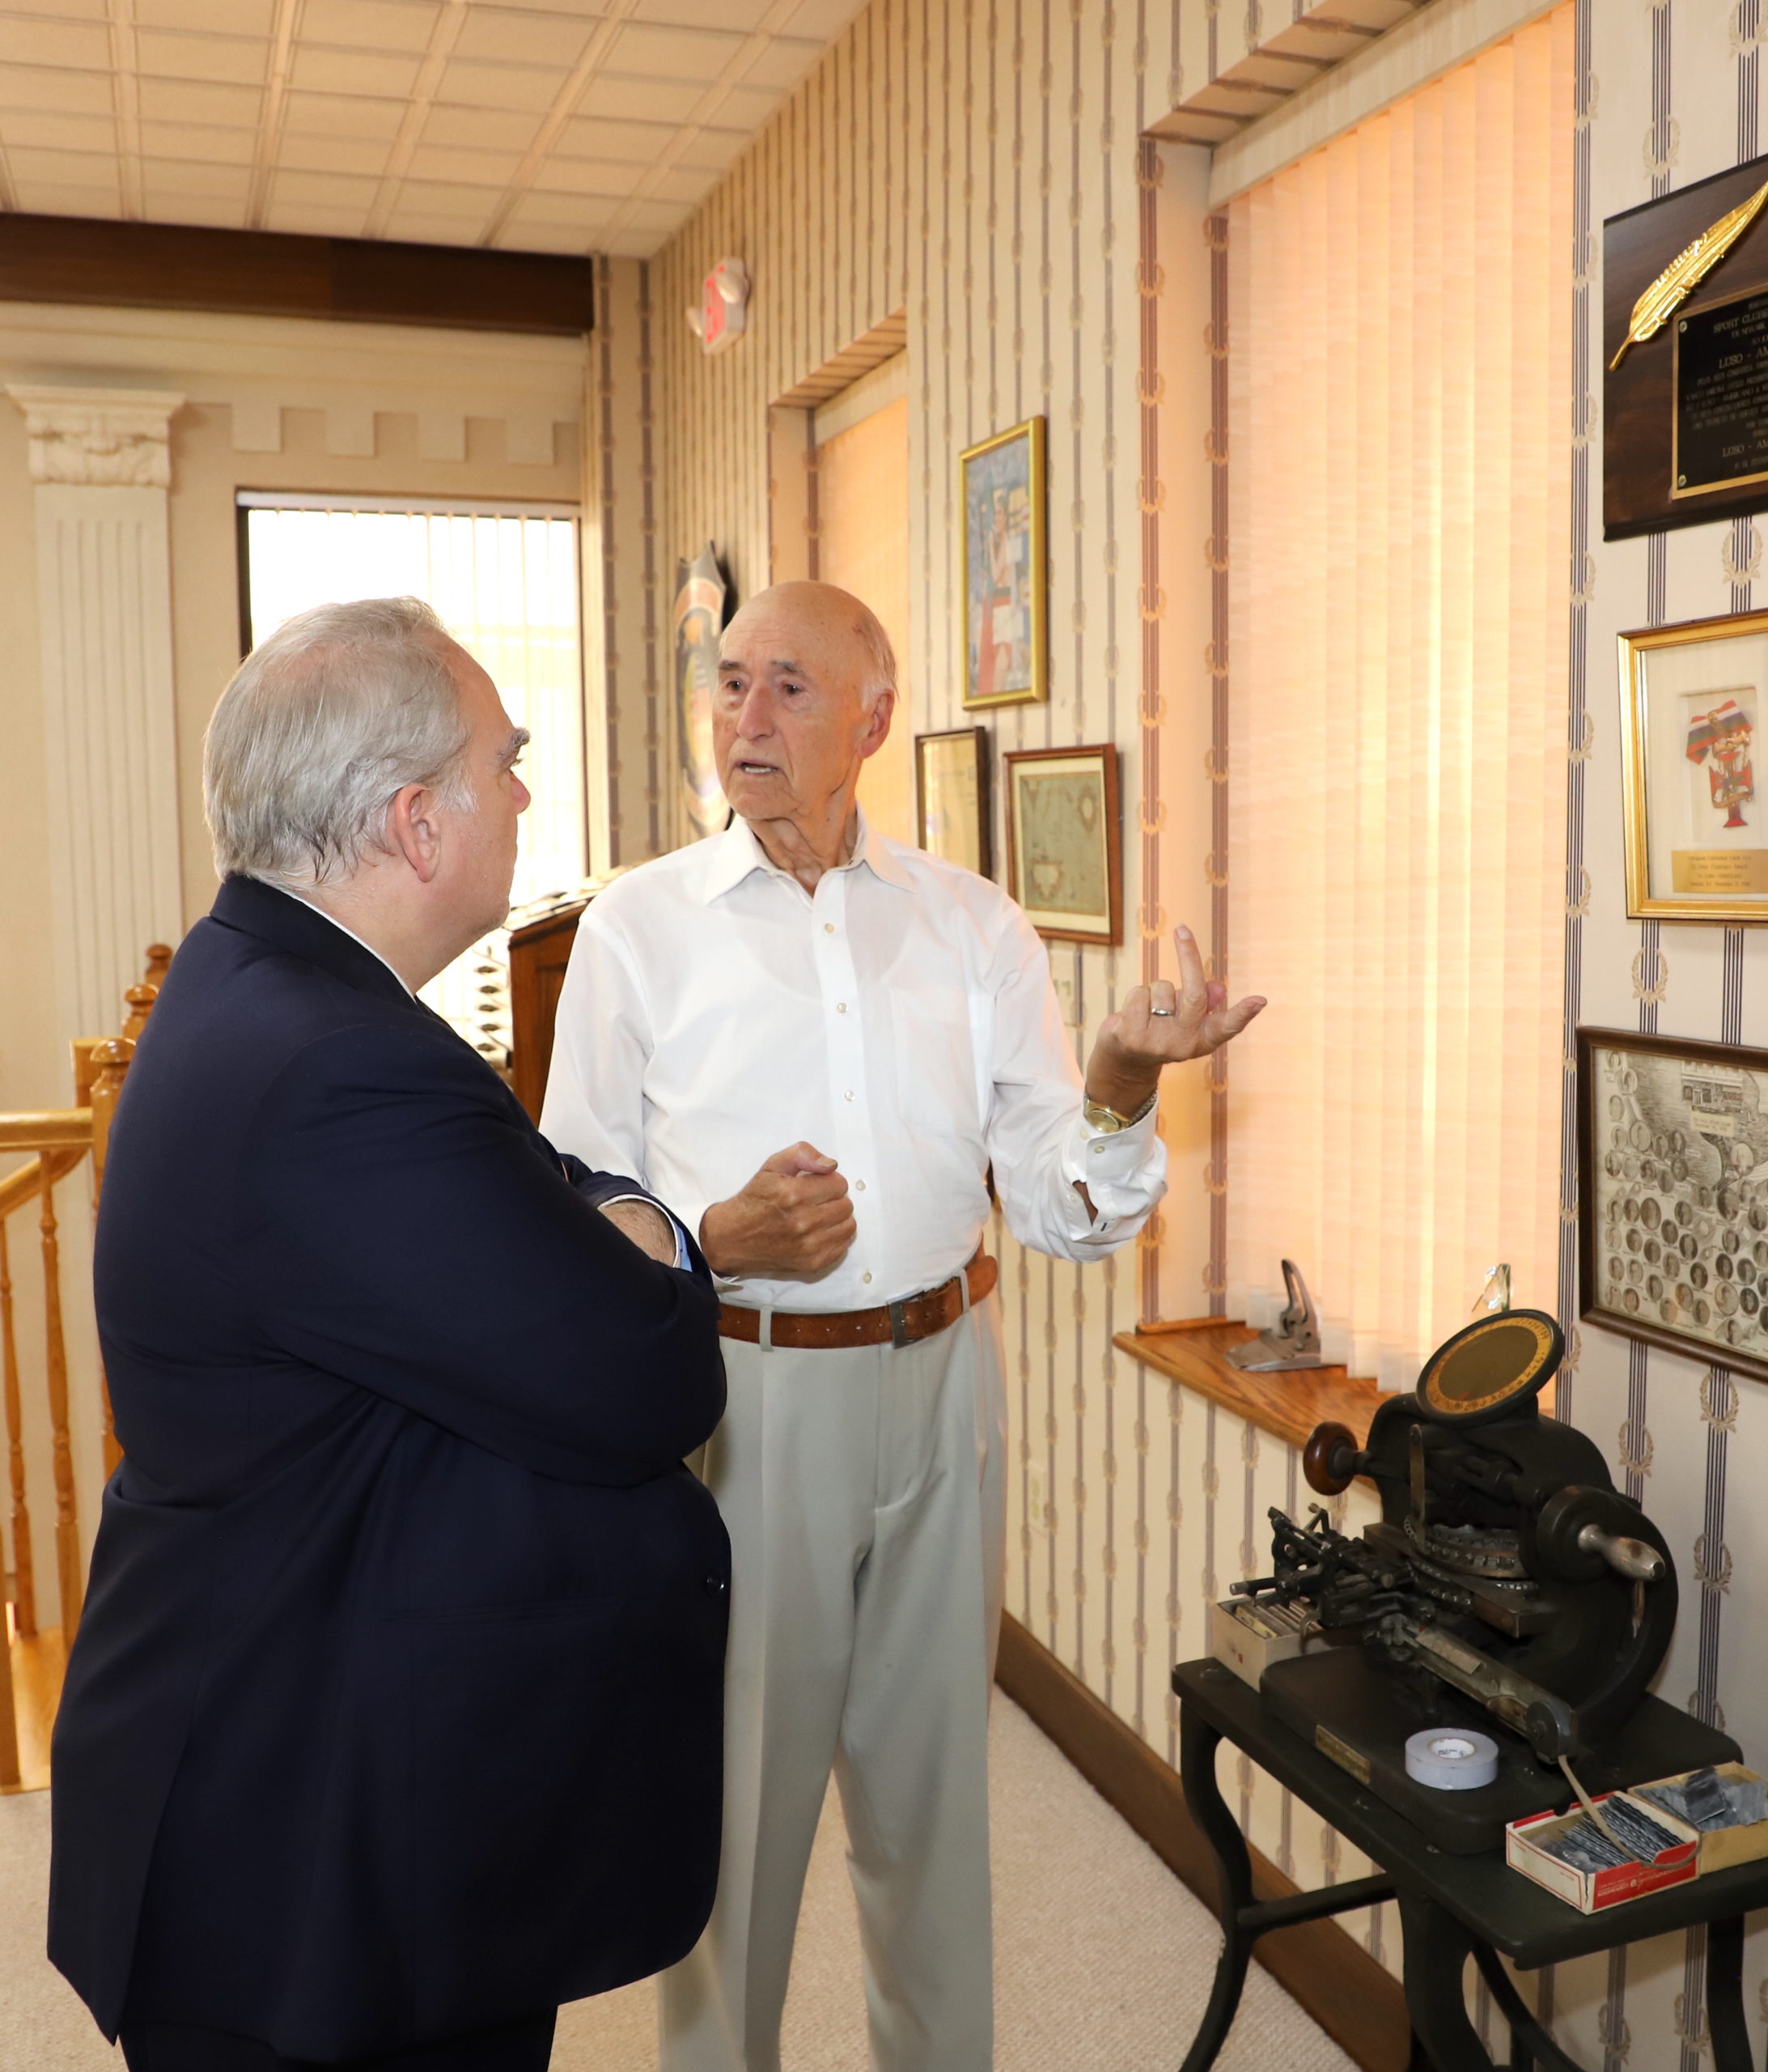 NEWARK: Cônsul-geral Luís Sequeira visitou instalações do jornal LUSO- AMERICANO no Ironbound - LusoAmericano